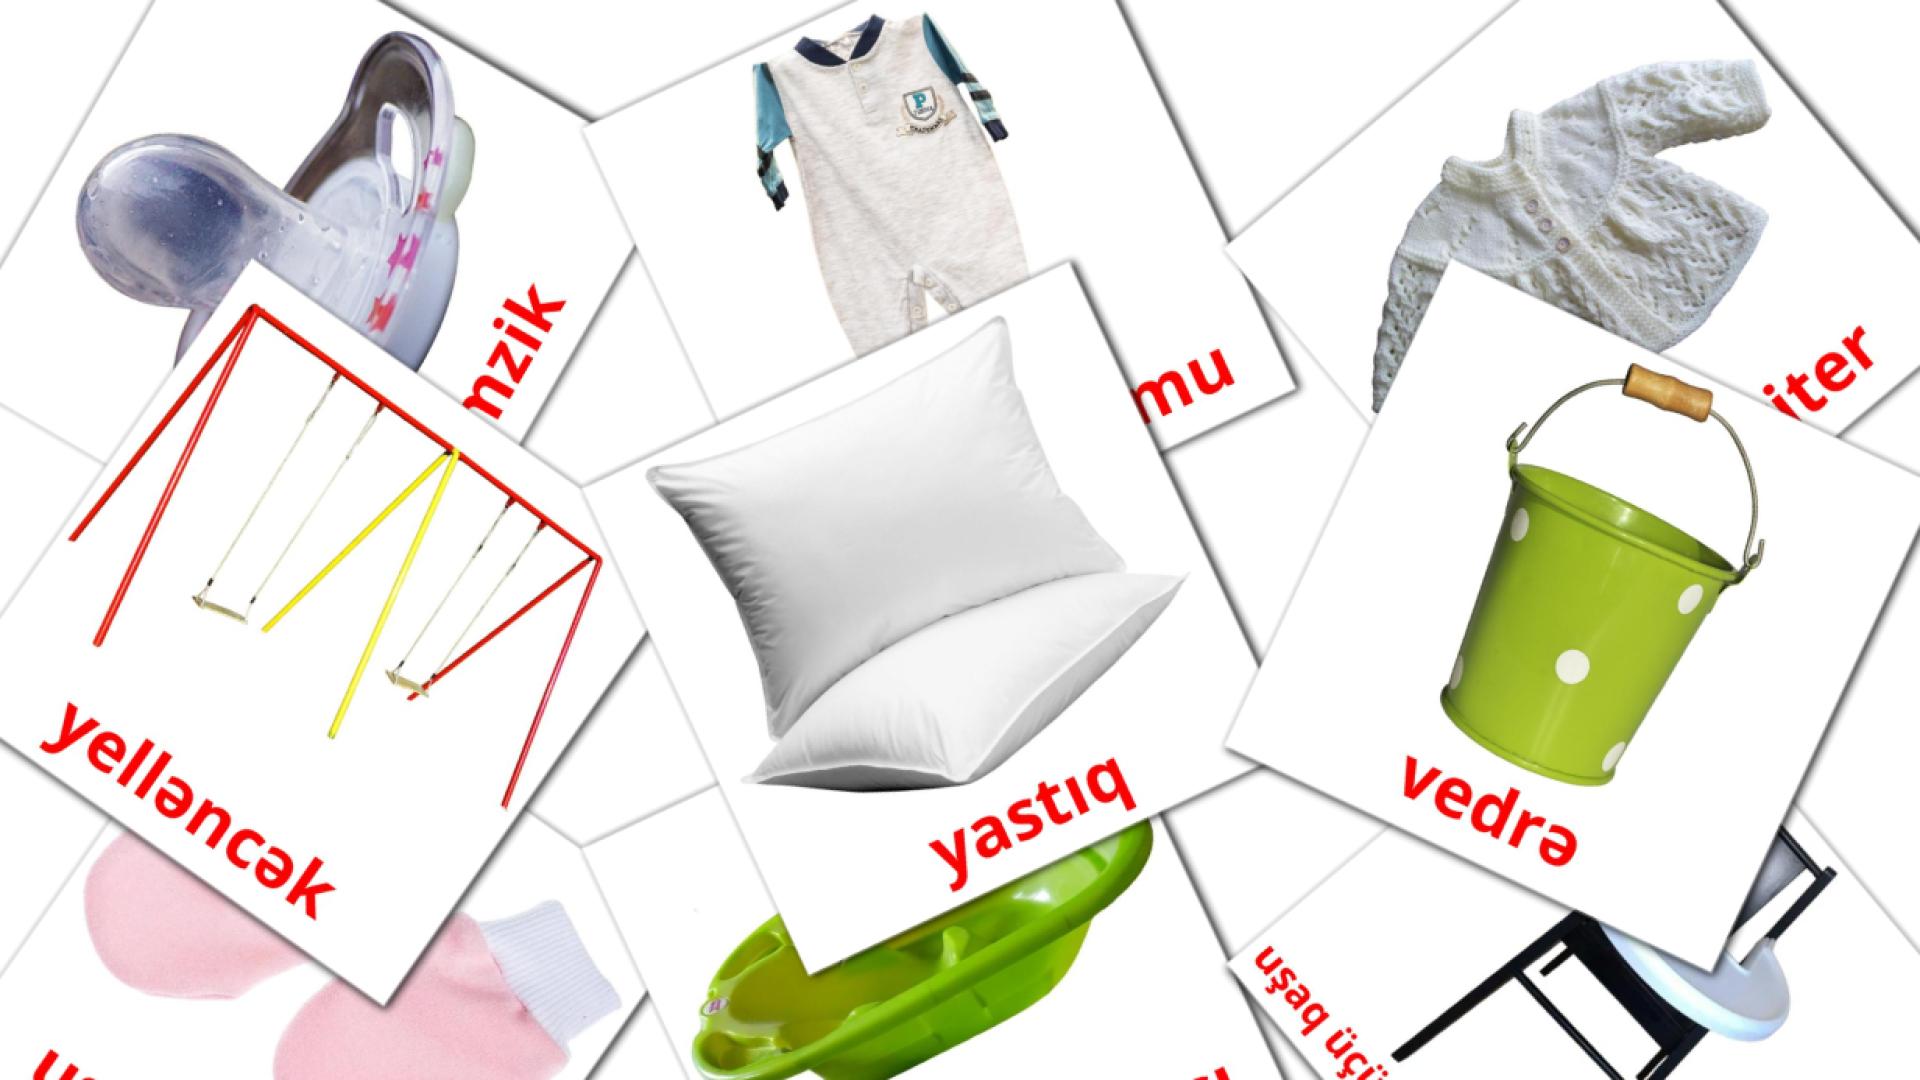 Körpə azerbaijani vocabulary flashcards